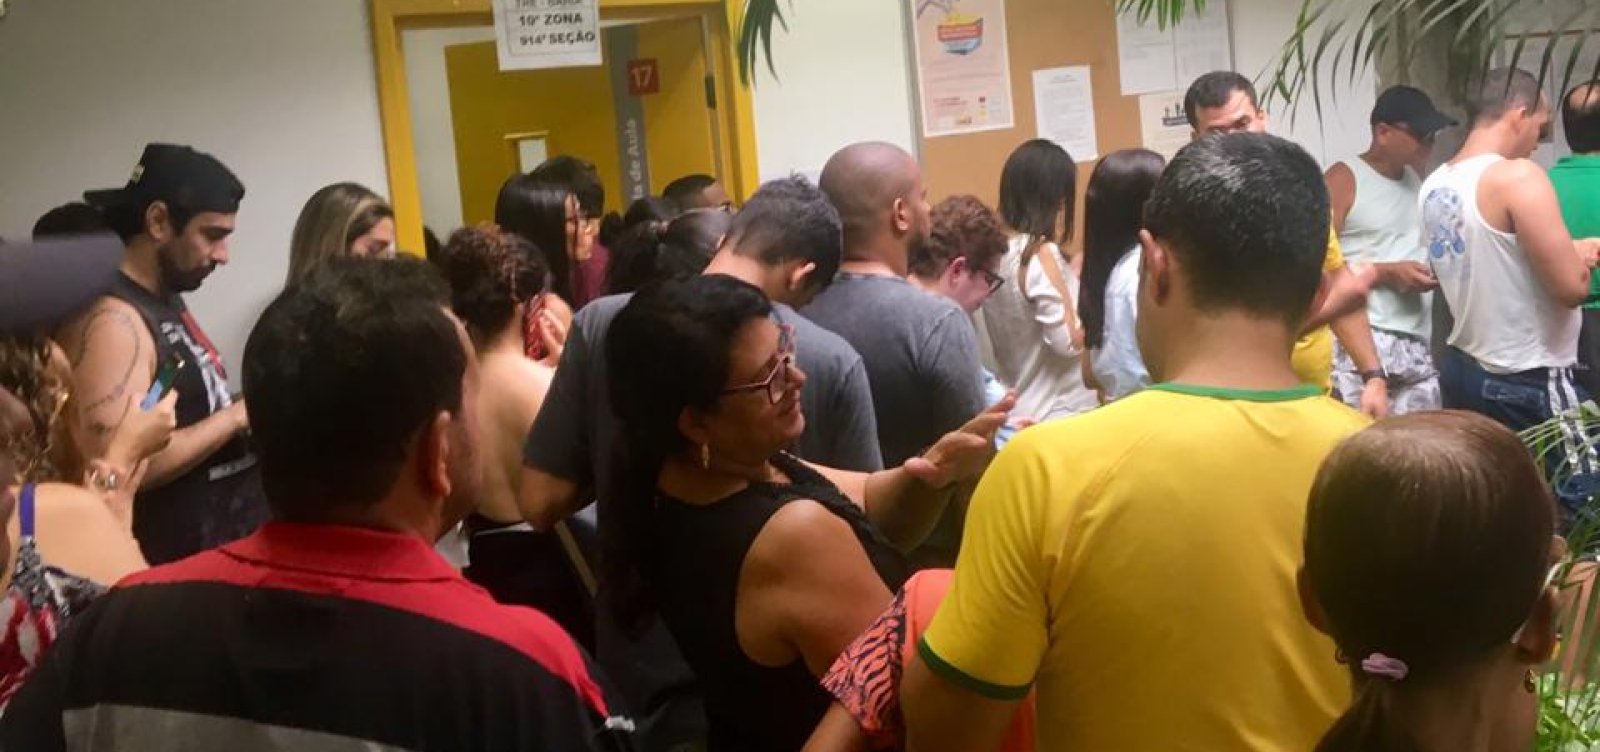 Baianos esperam até quatro horas para votar em Salvador 